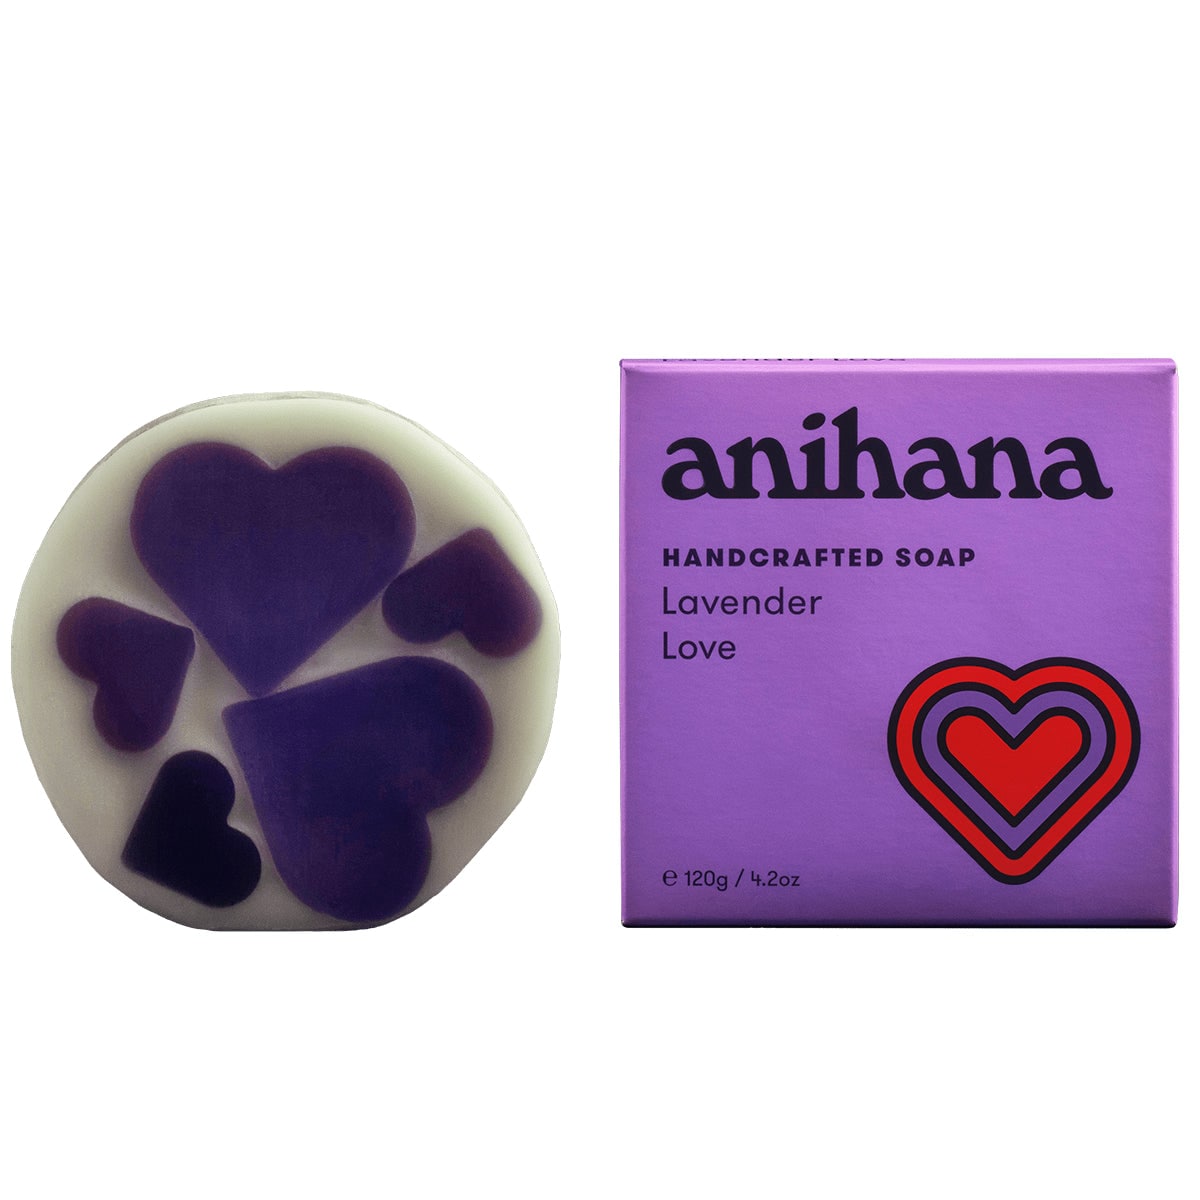 Anihana Soap Bar Lavender 120g